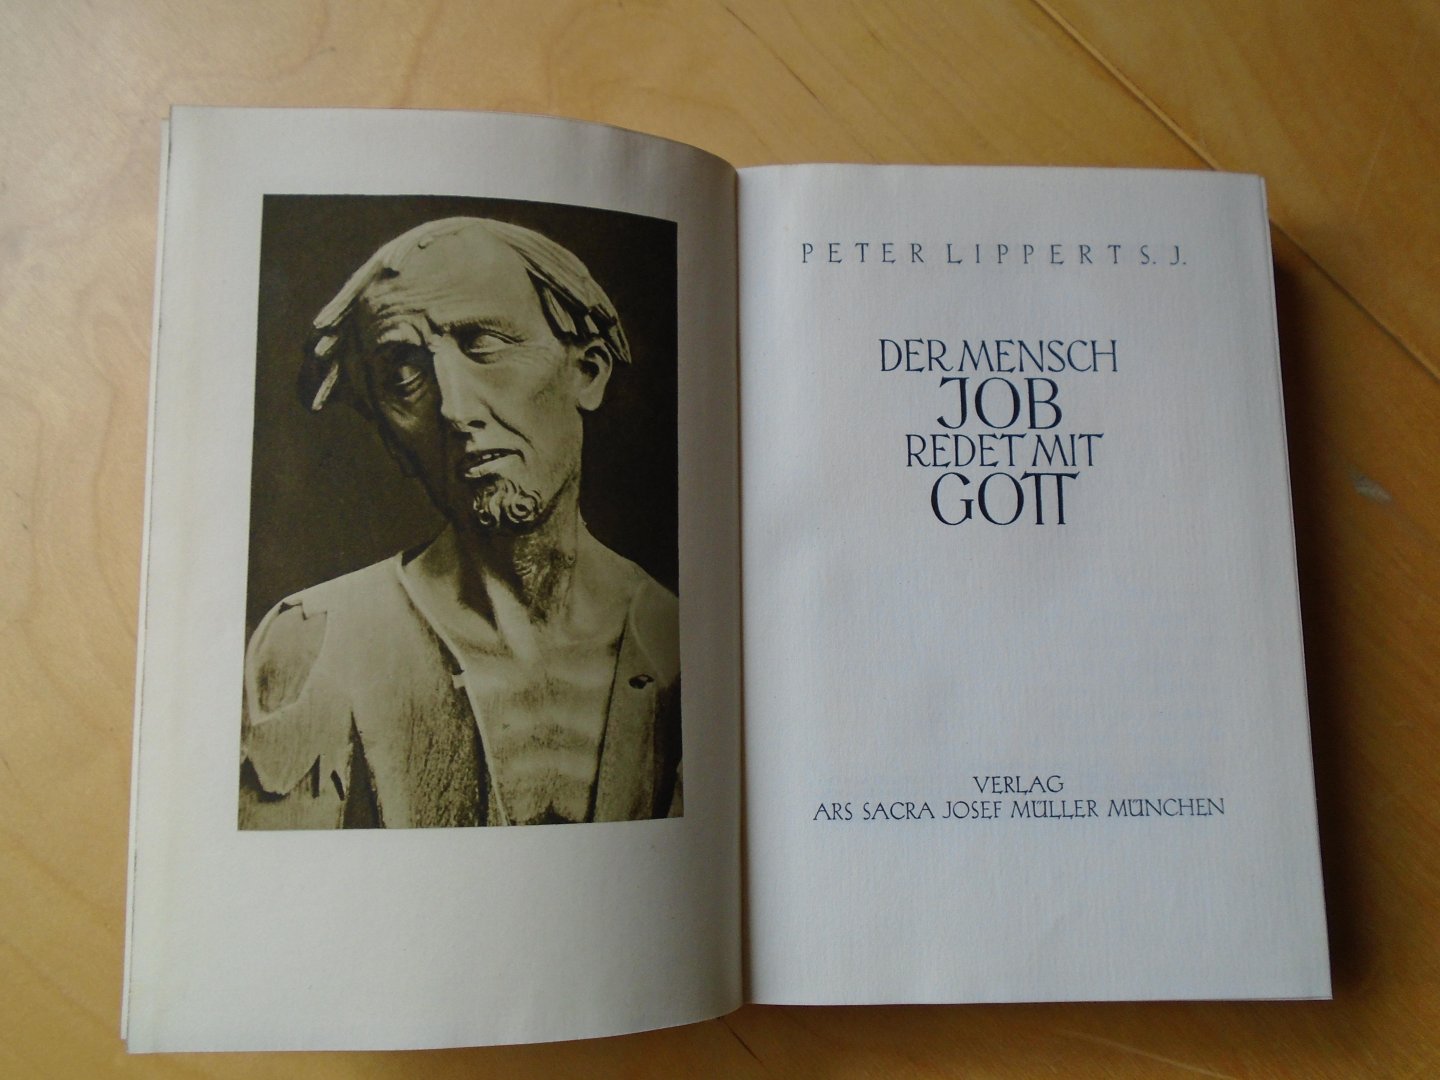 Lippert, Peter - Der Mensch Job redet mit Gott